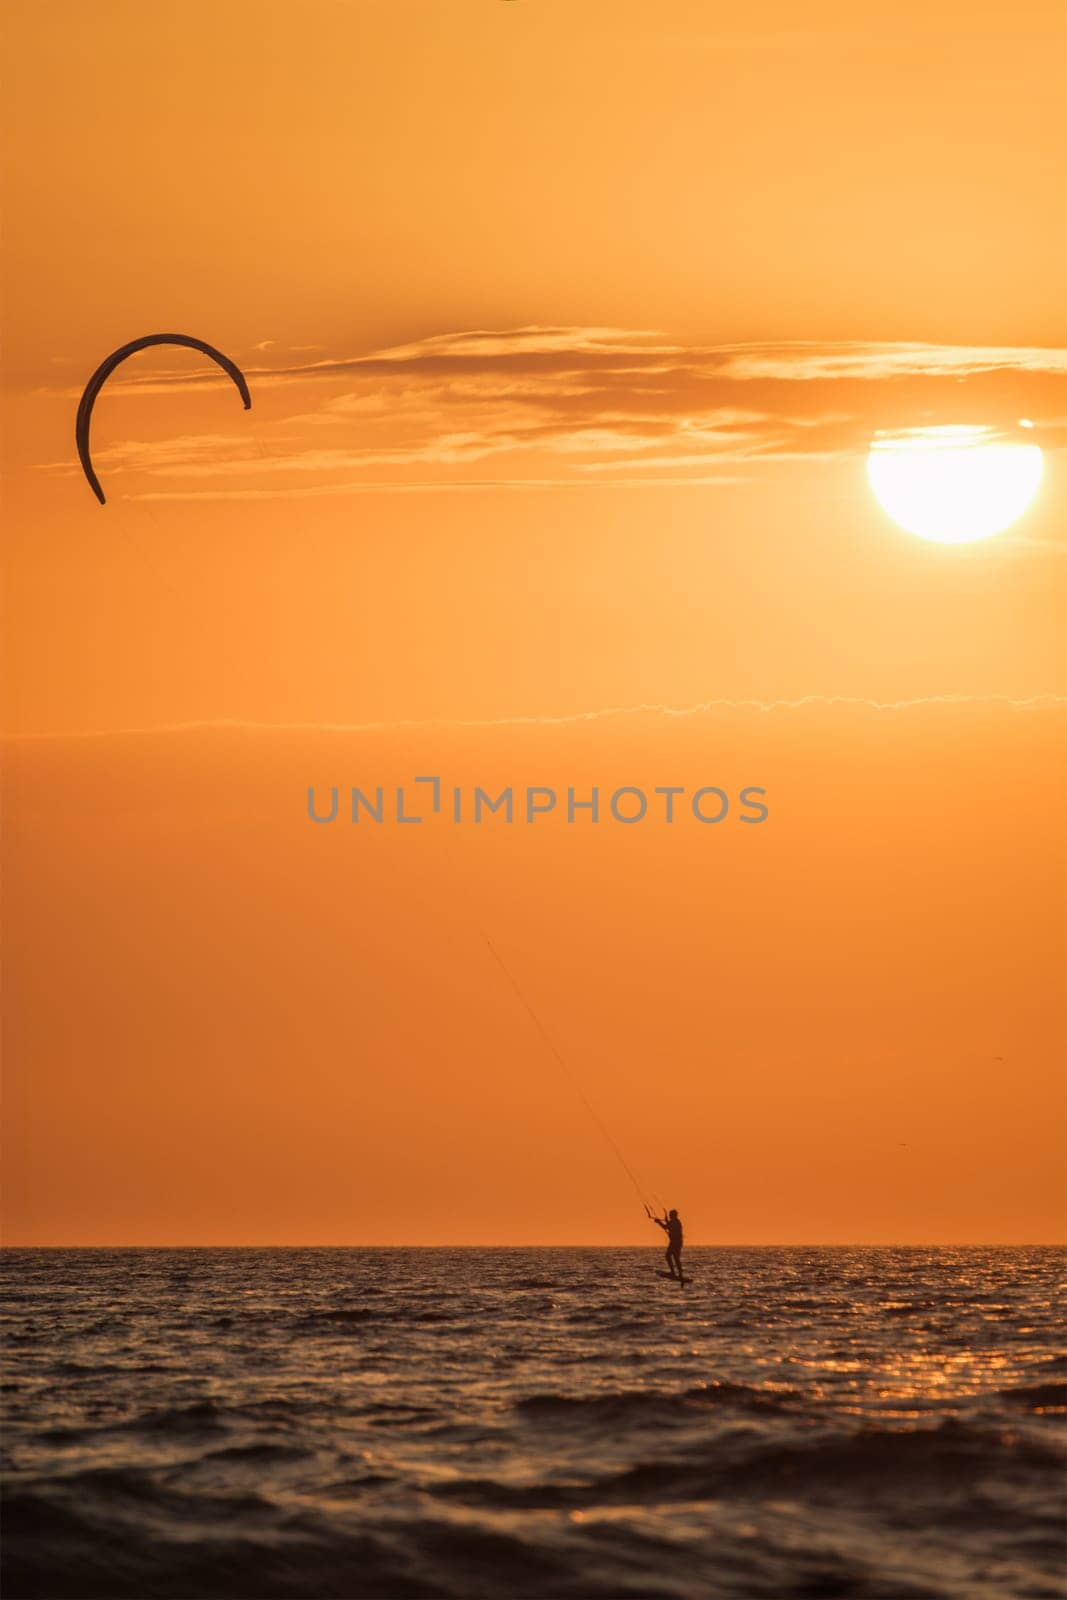 Foiling kiteboarding kitesurfing kiteboarder (kitesurfer) silhouette in the Atlantic ocean on sunset. Fonte da Telha beach, Costa da Caparica, Portugal